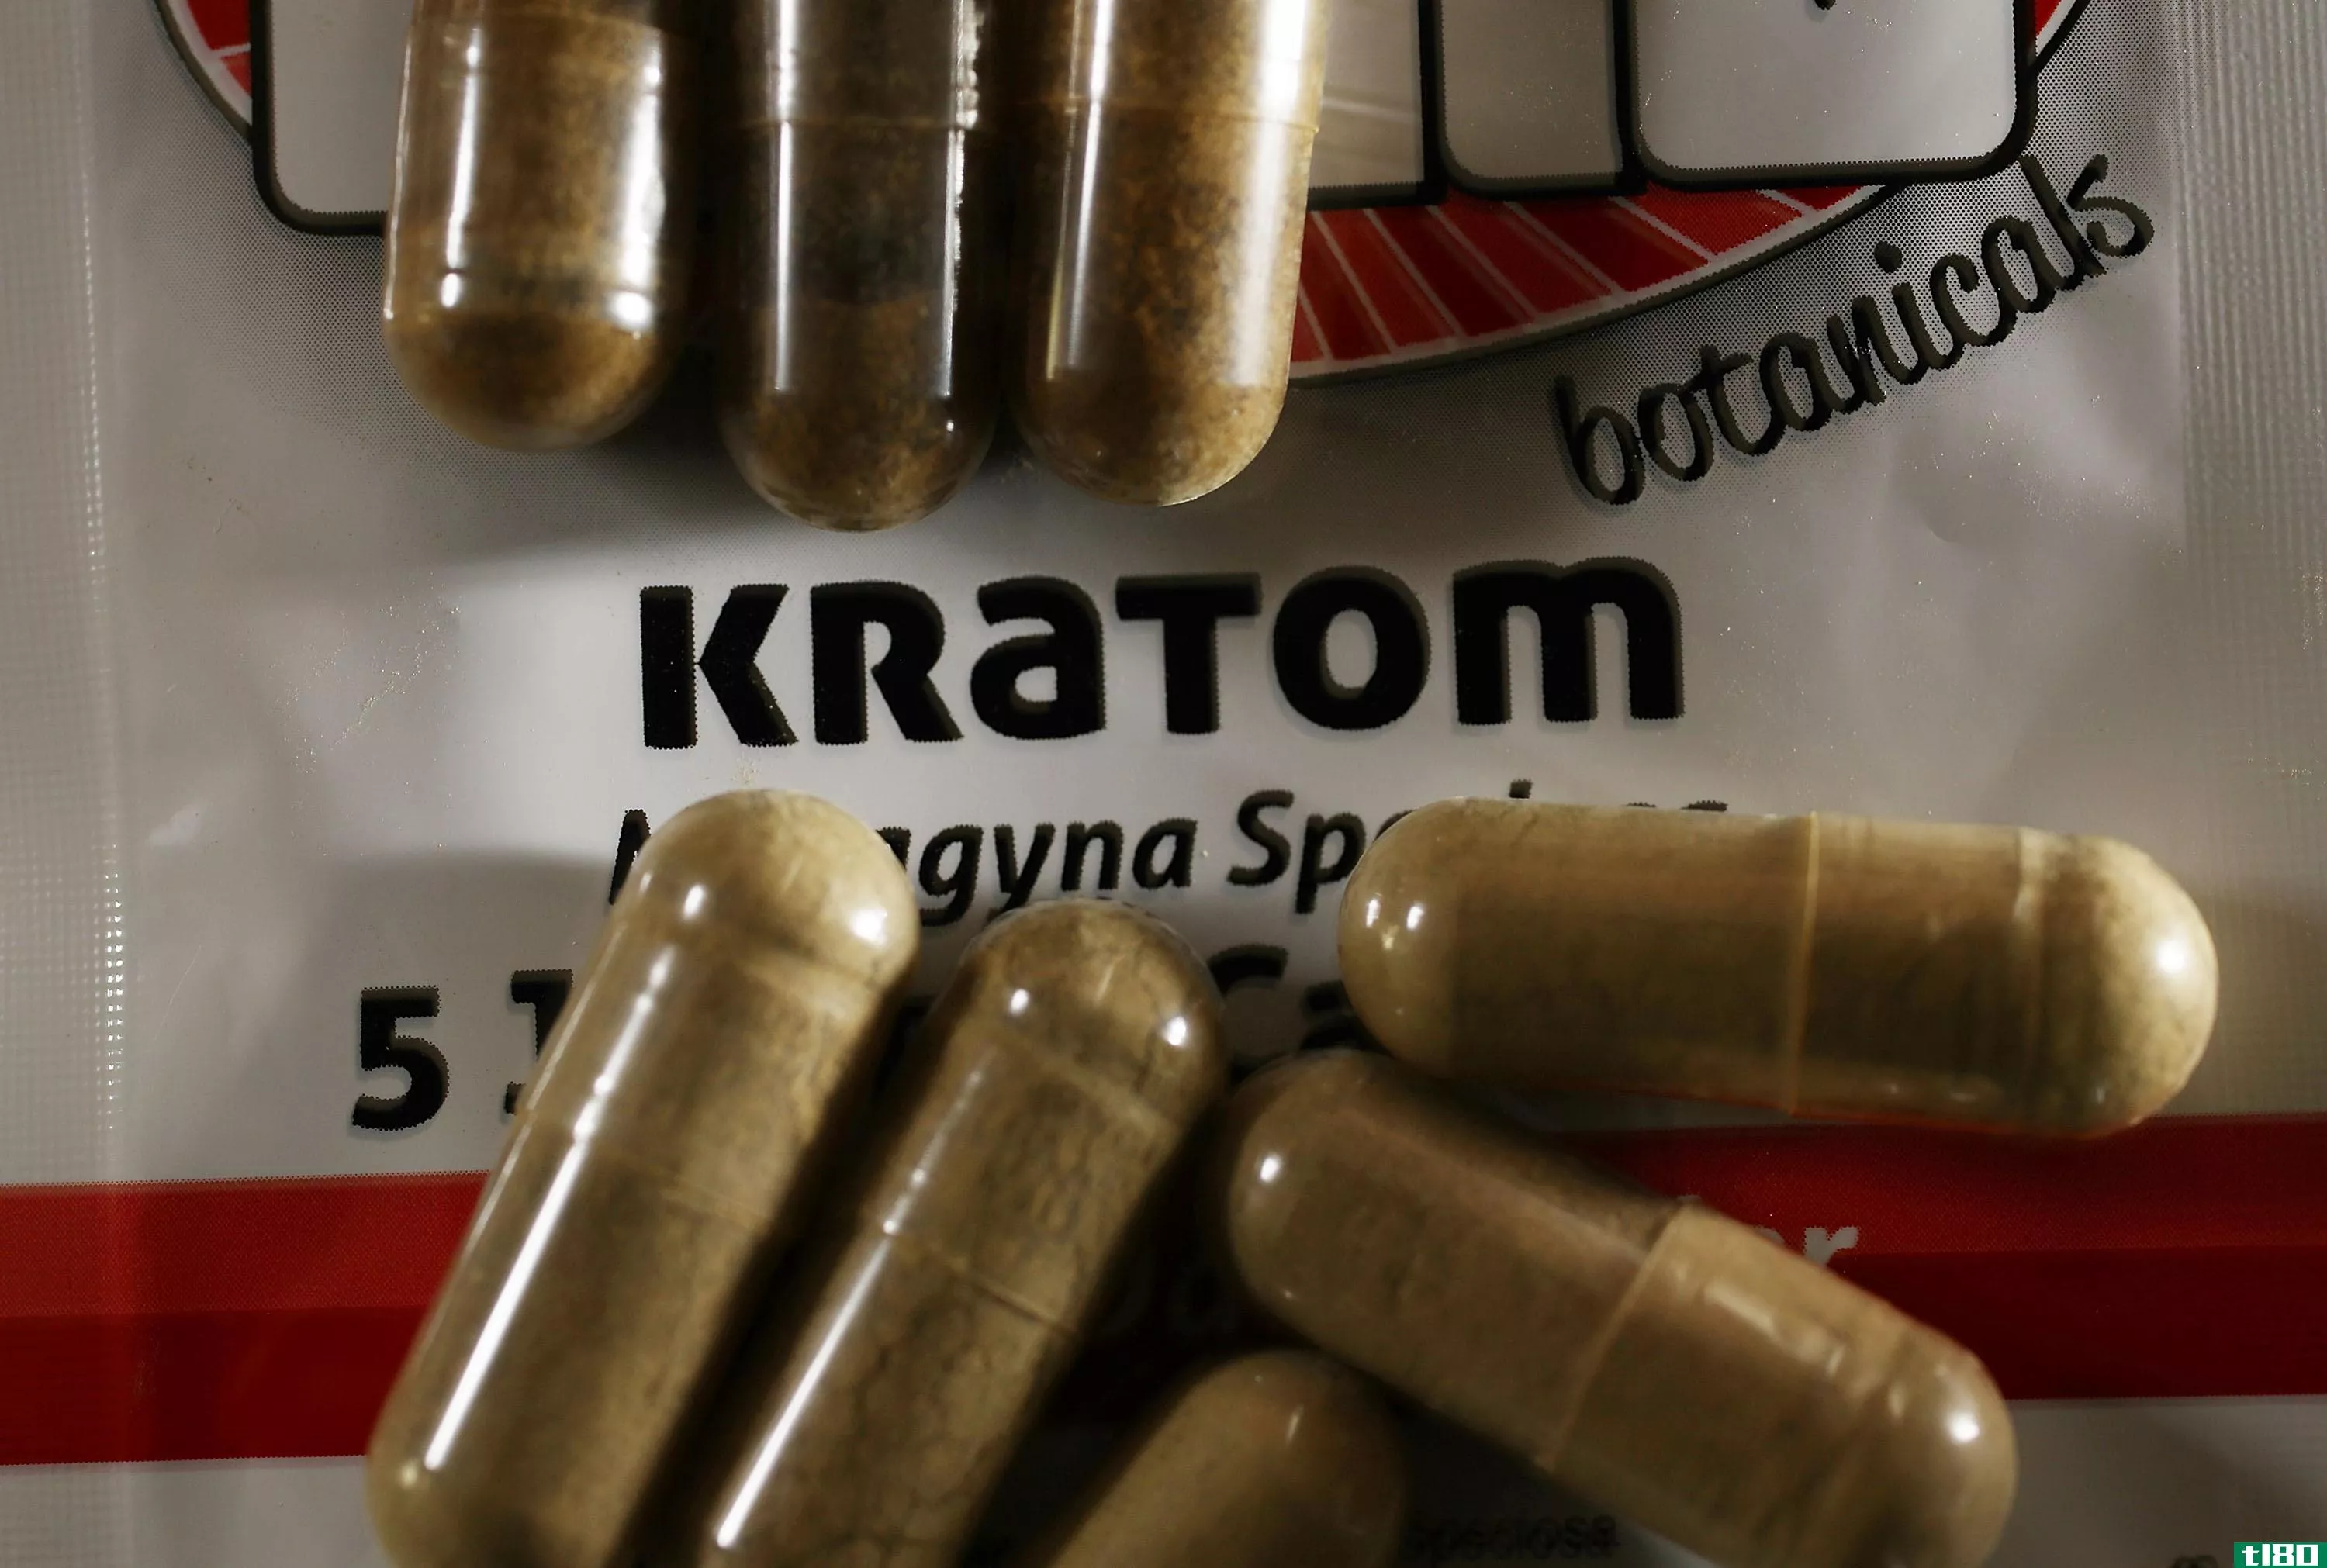 为什么禁止类似鸦片的植物kratom可能弊大于利